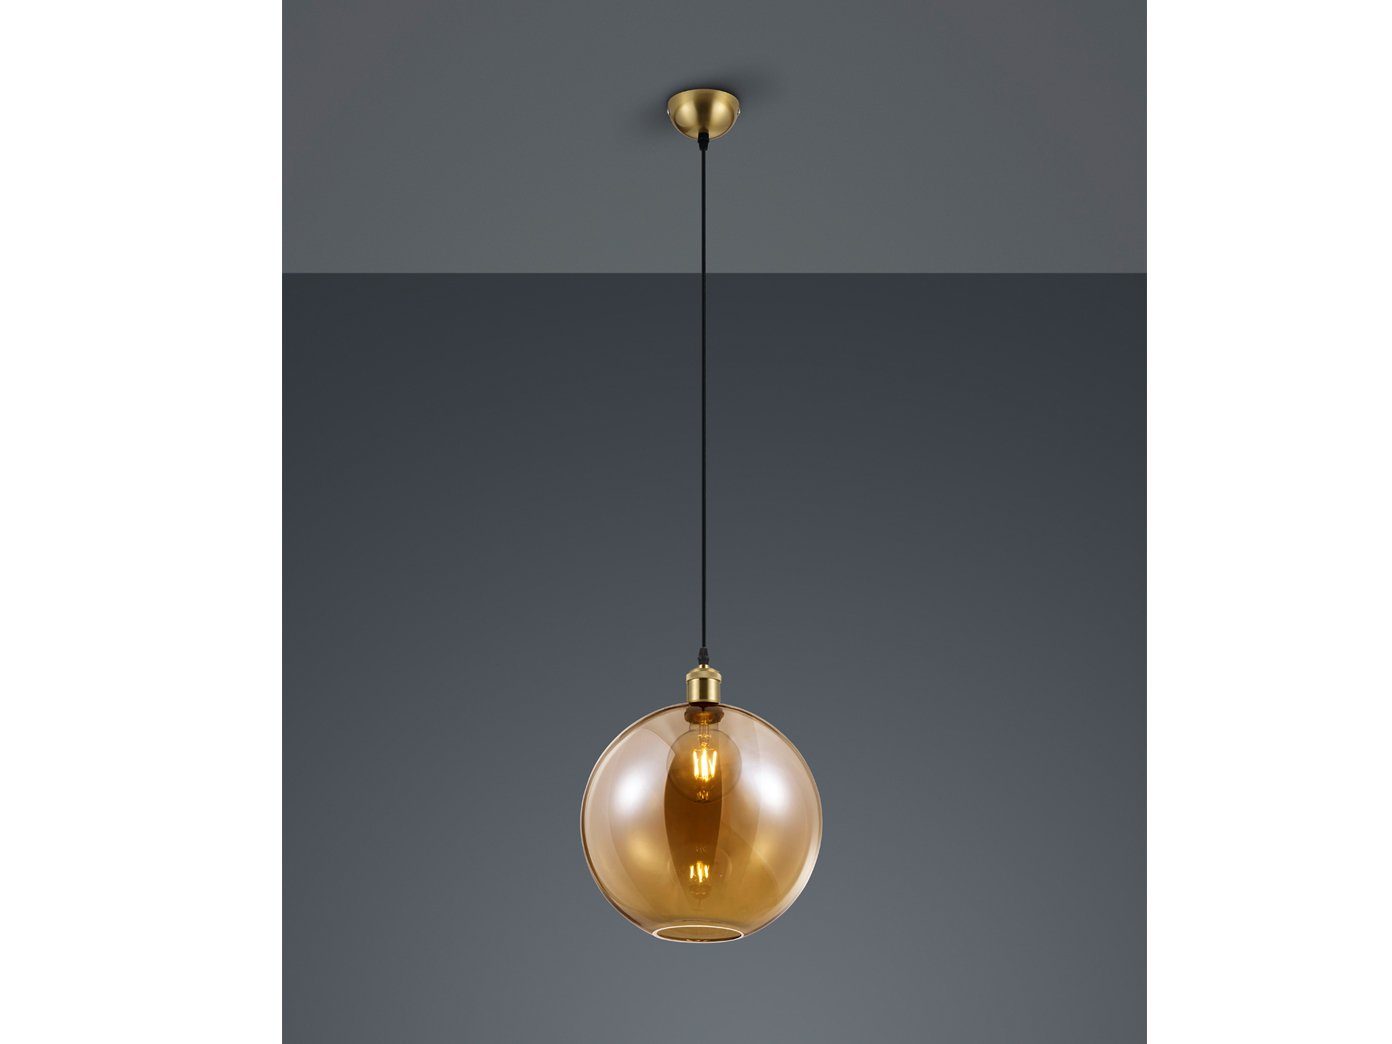 LED Decken Lampe Pendel Hänge Glas-Kugel Design Leuchte Beleuchtung Ess Zimmer 